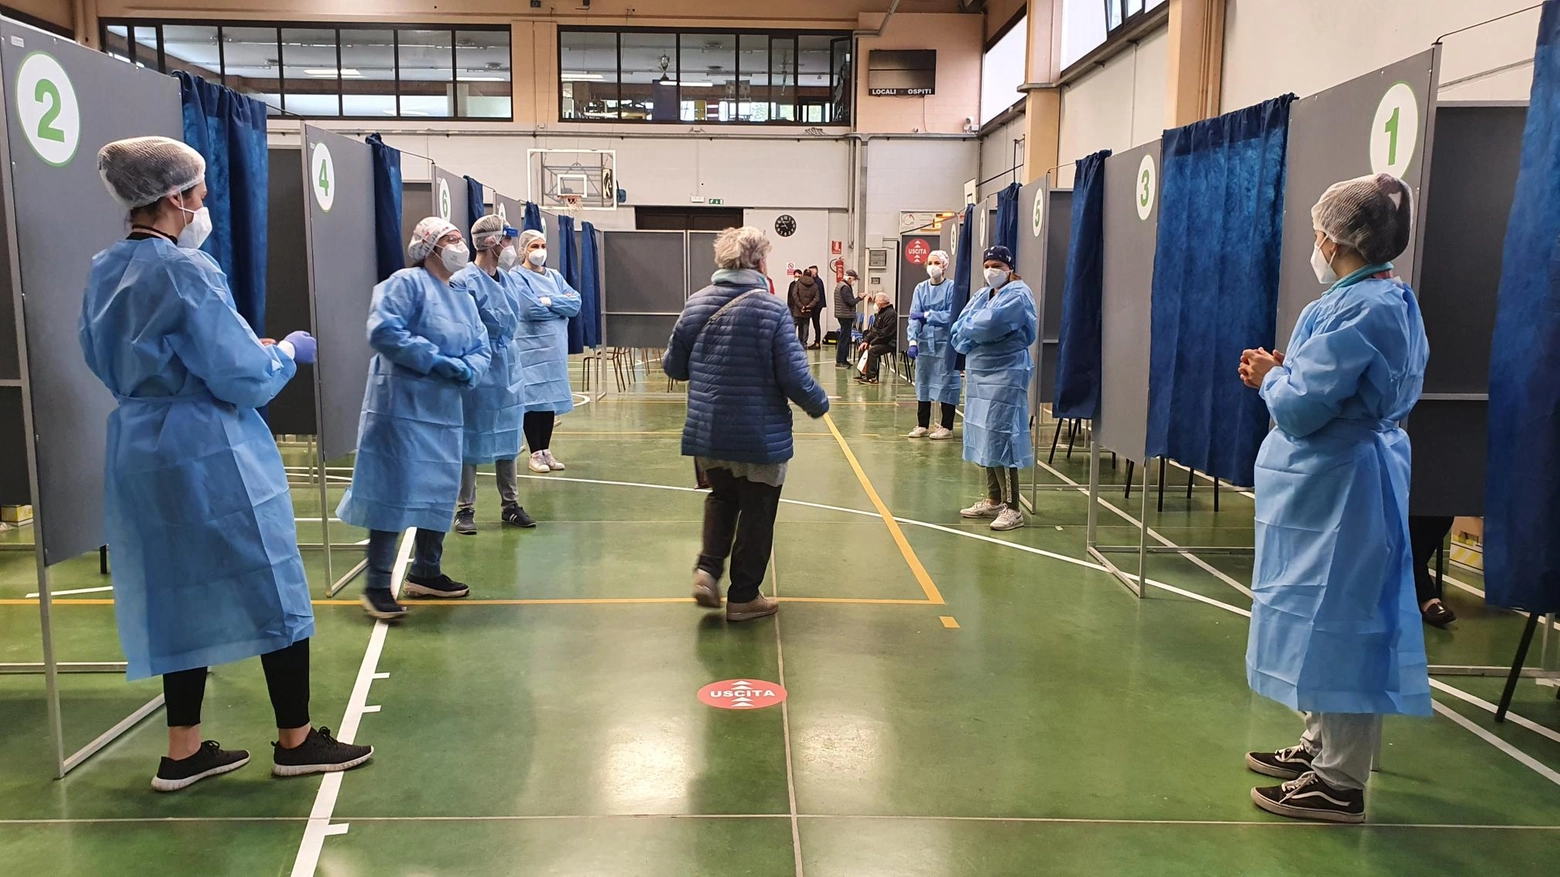 Le infermiere al lavoro nel nuovo punto vaccinale di Paderno Dugnnao